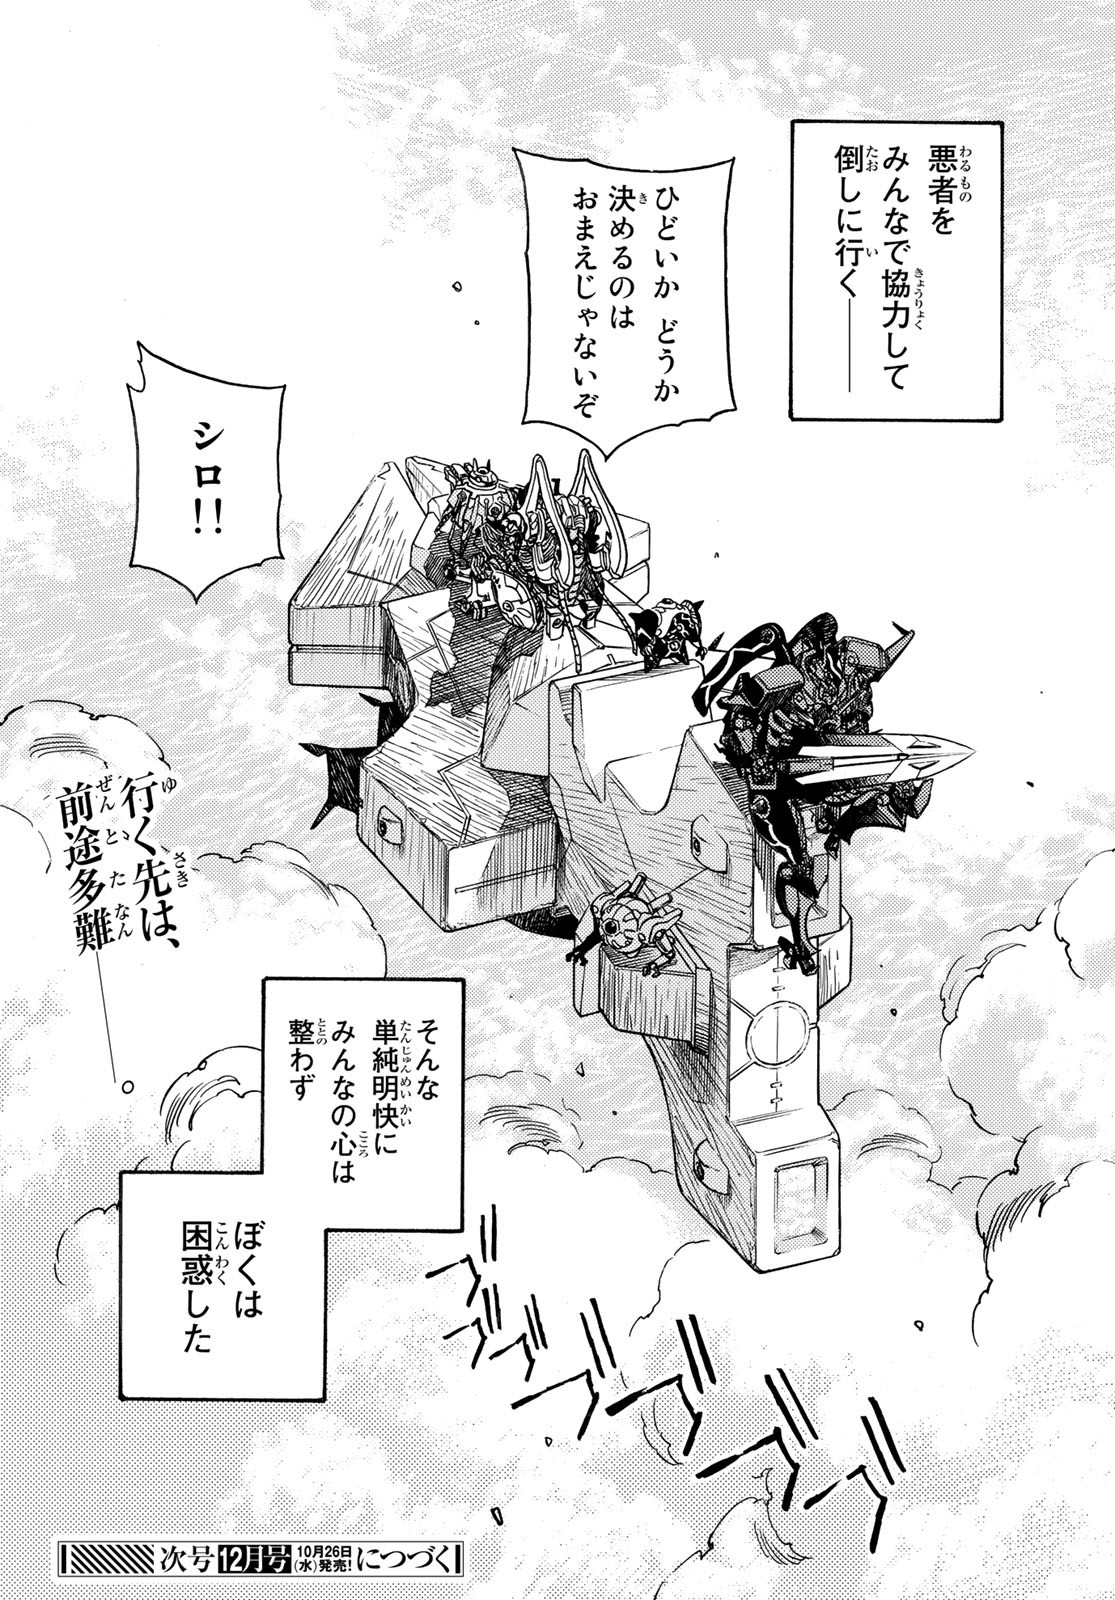 Mugou no Schnell Gear: Chikyuugai Kisouka AI - Chapter 41 - Page 24